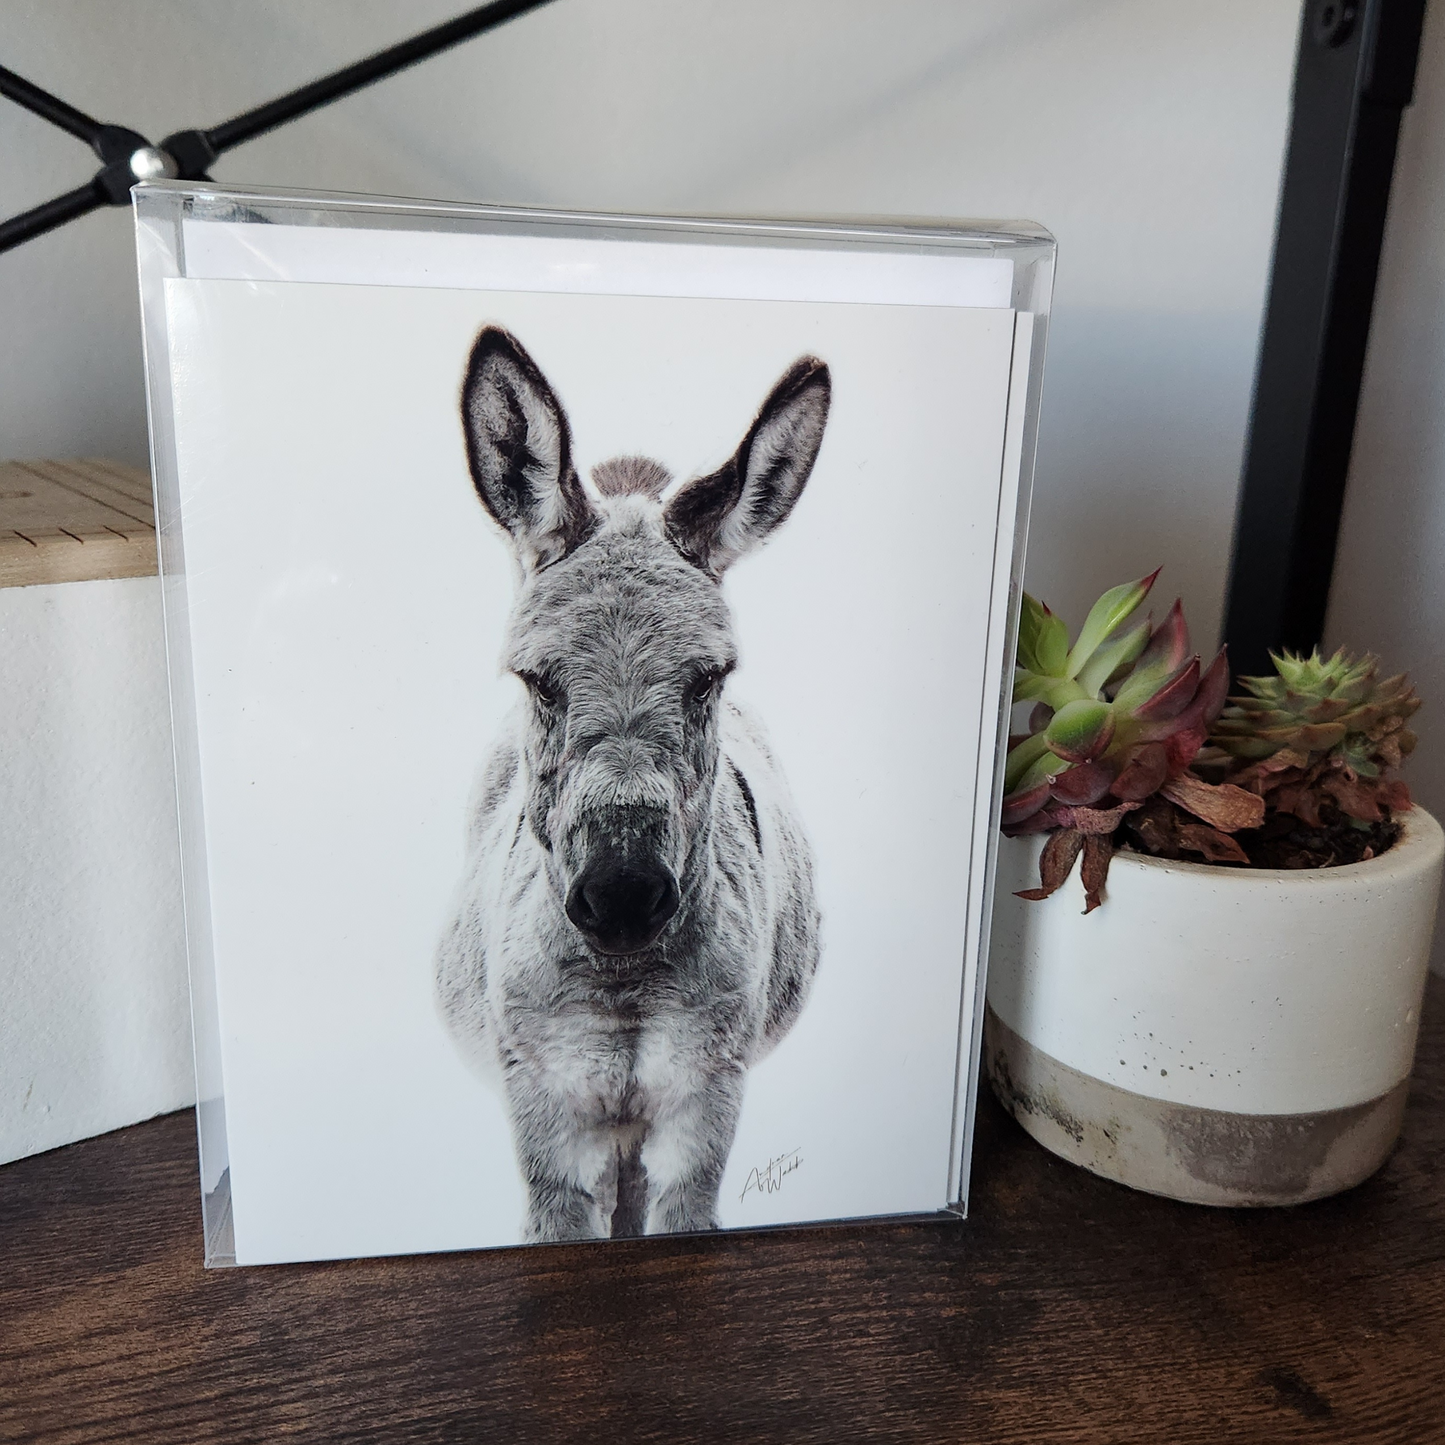 Donkey art, baby donkey stationary, donkey folded notecards, donkey on white background, donkey greeting cards